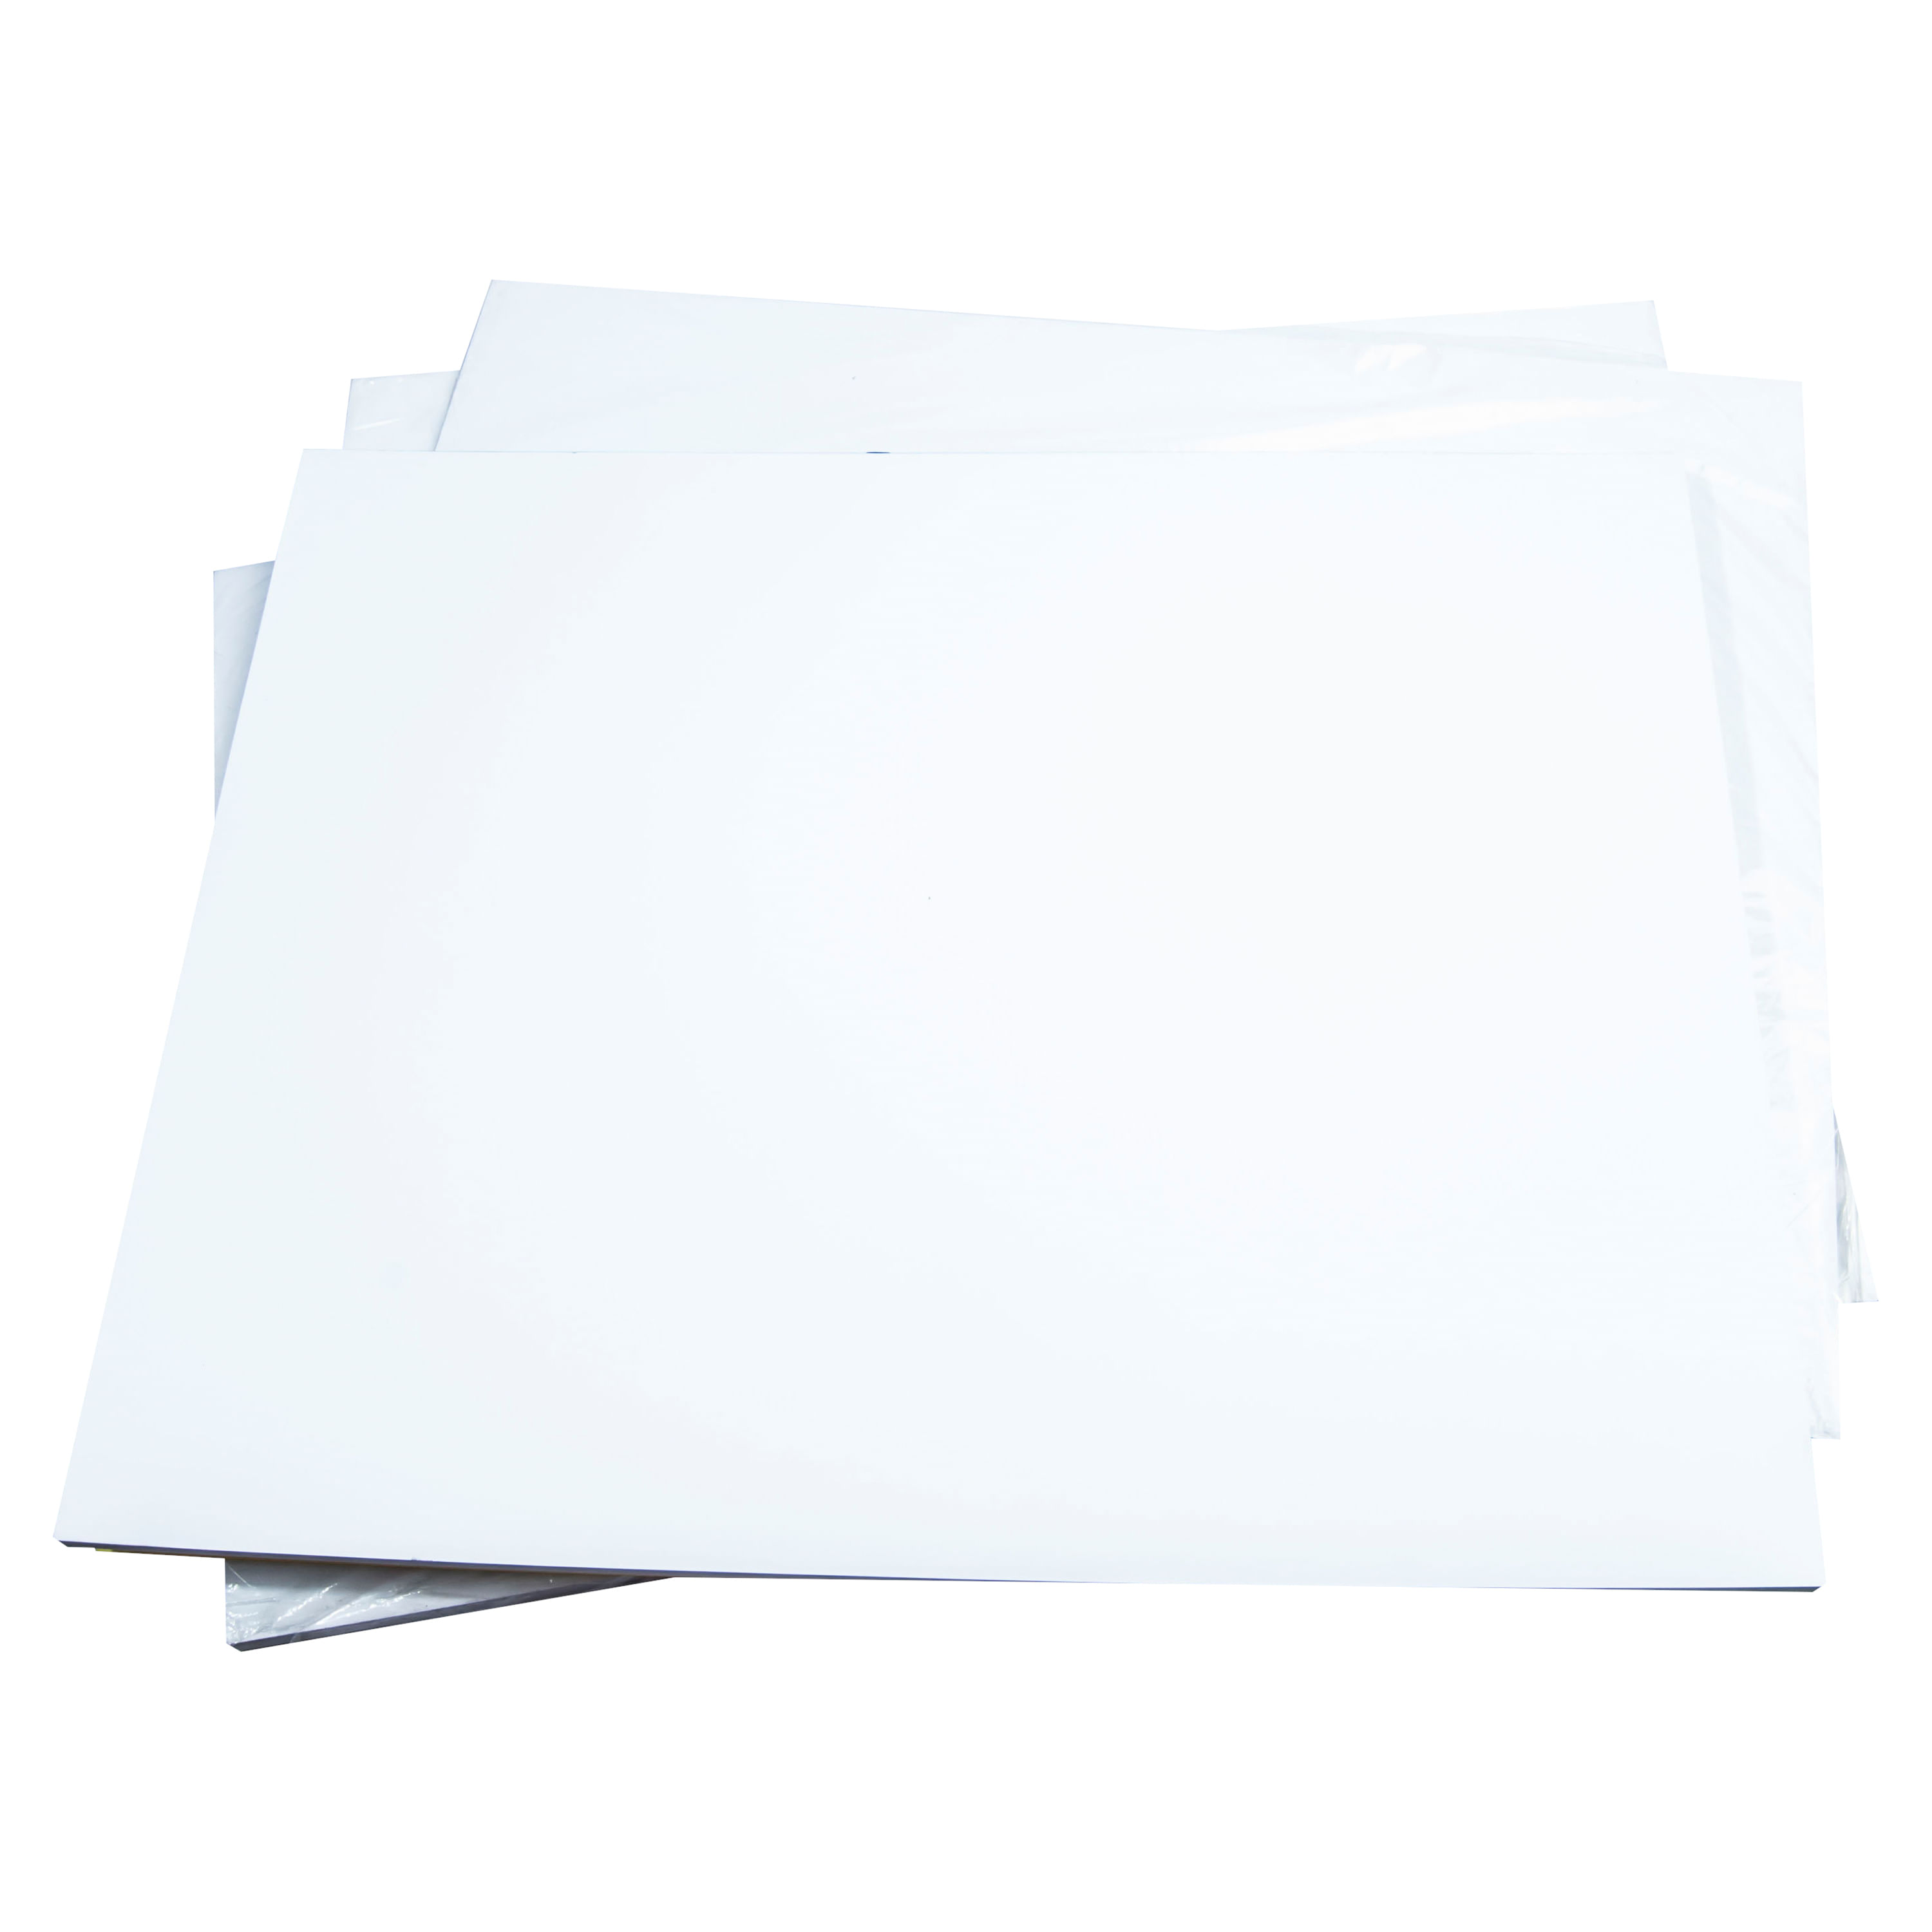 CASTERLI - Folios A3, 100 Hojas, Papel de 80 gr, Extra blanca